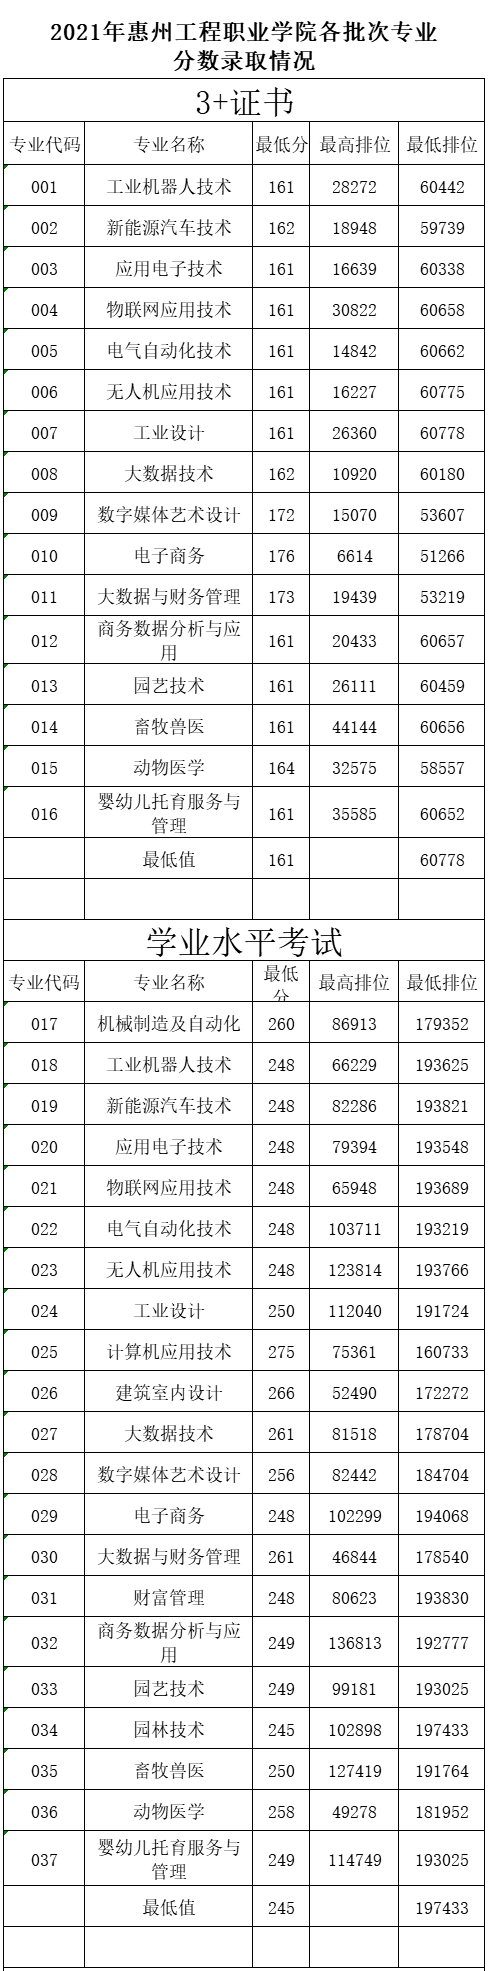 2023惠州工程职业学院春季高考录取分数线（含2021-2022历年）